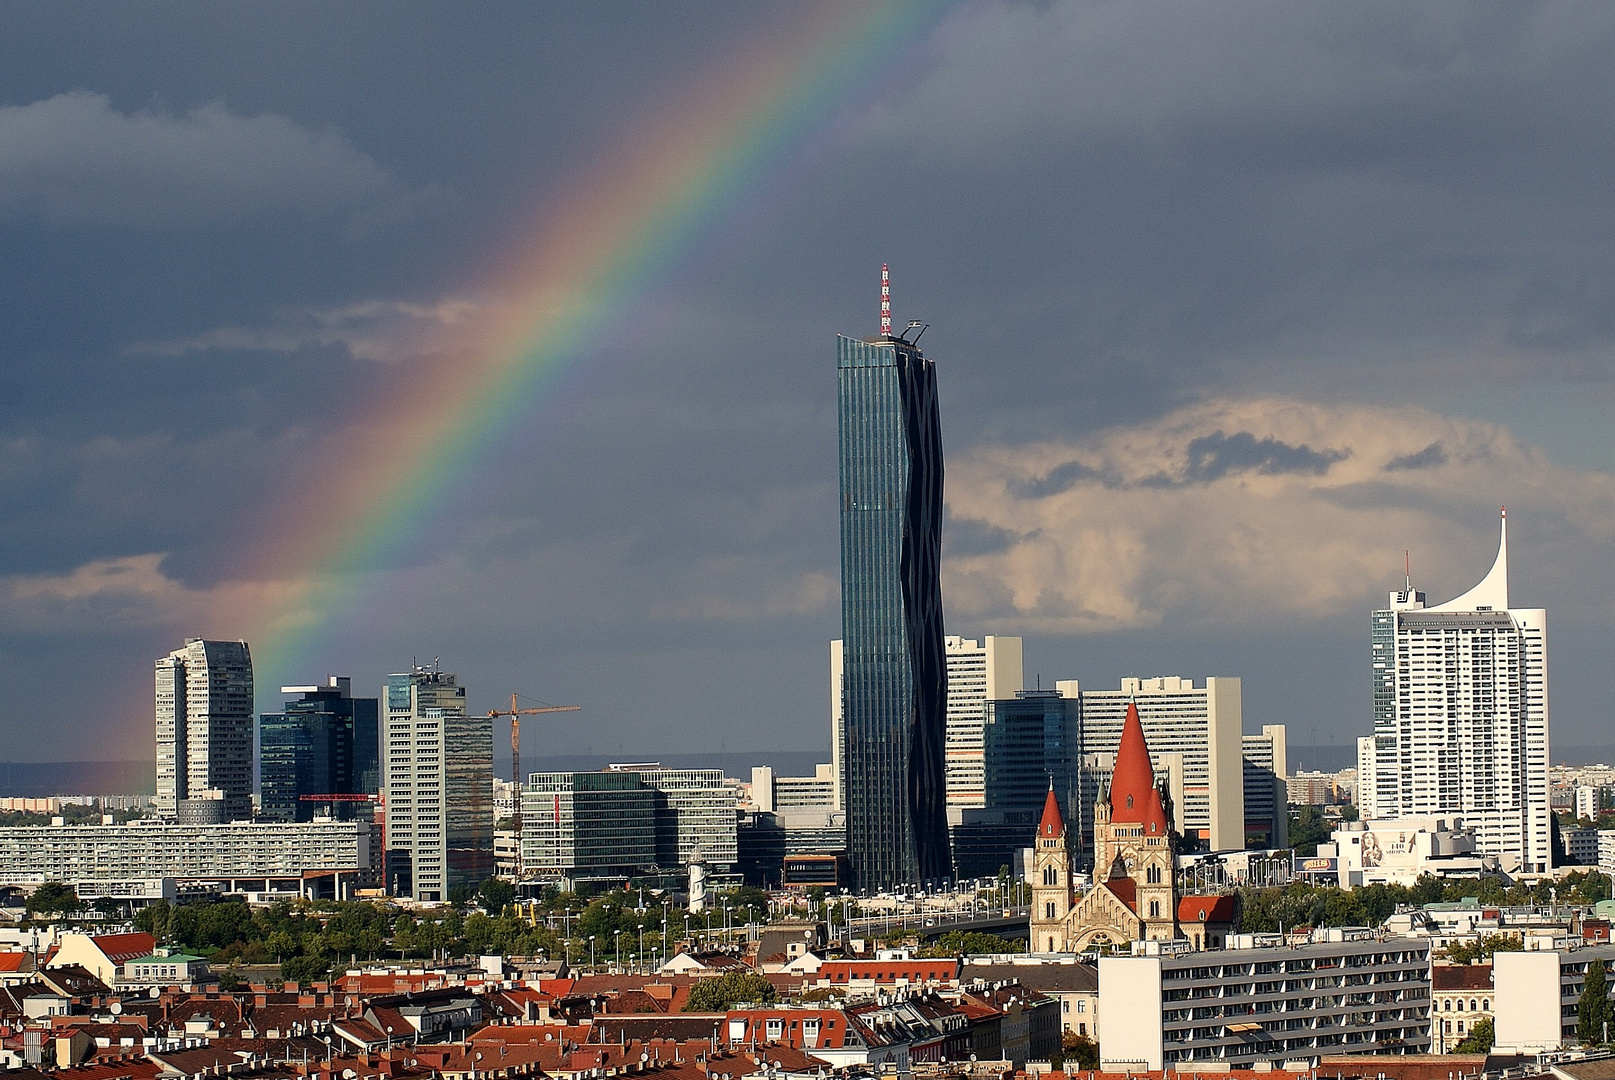 Regenbogen über Wien